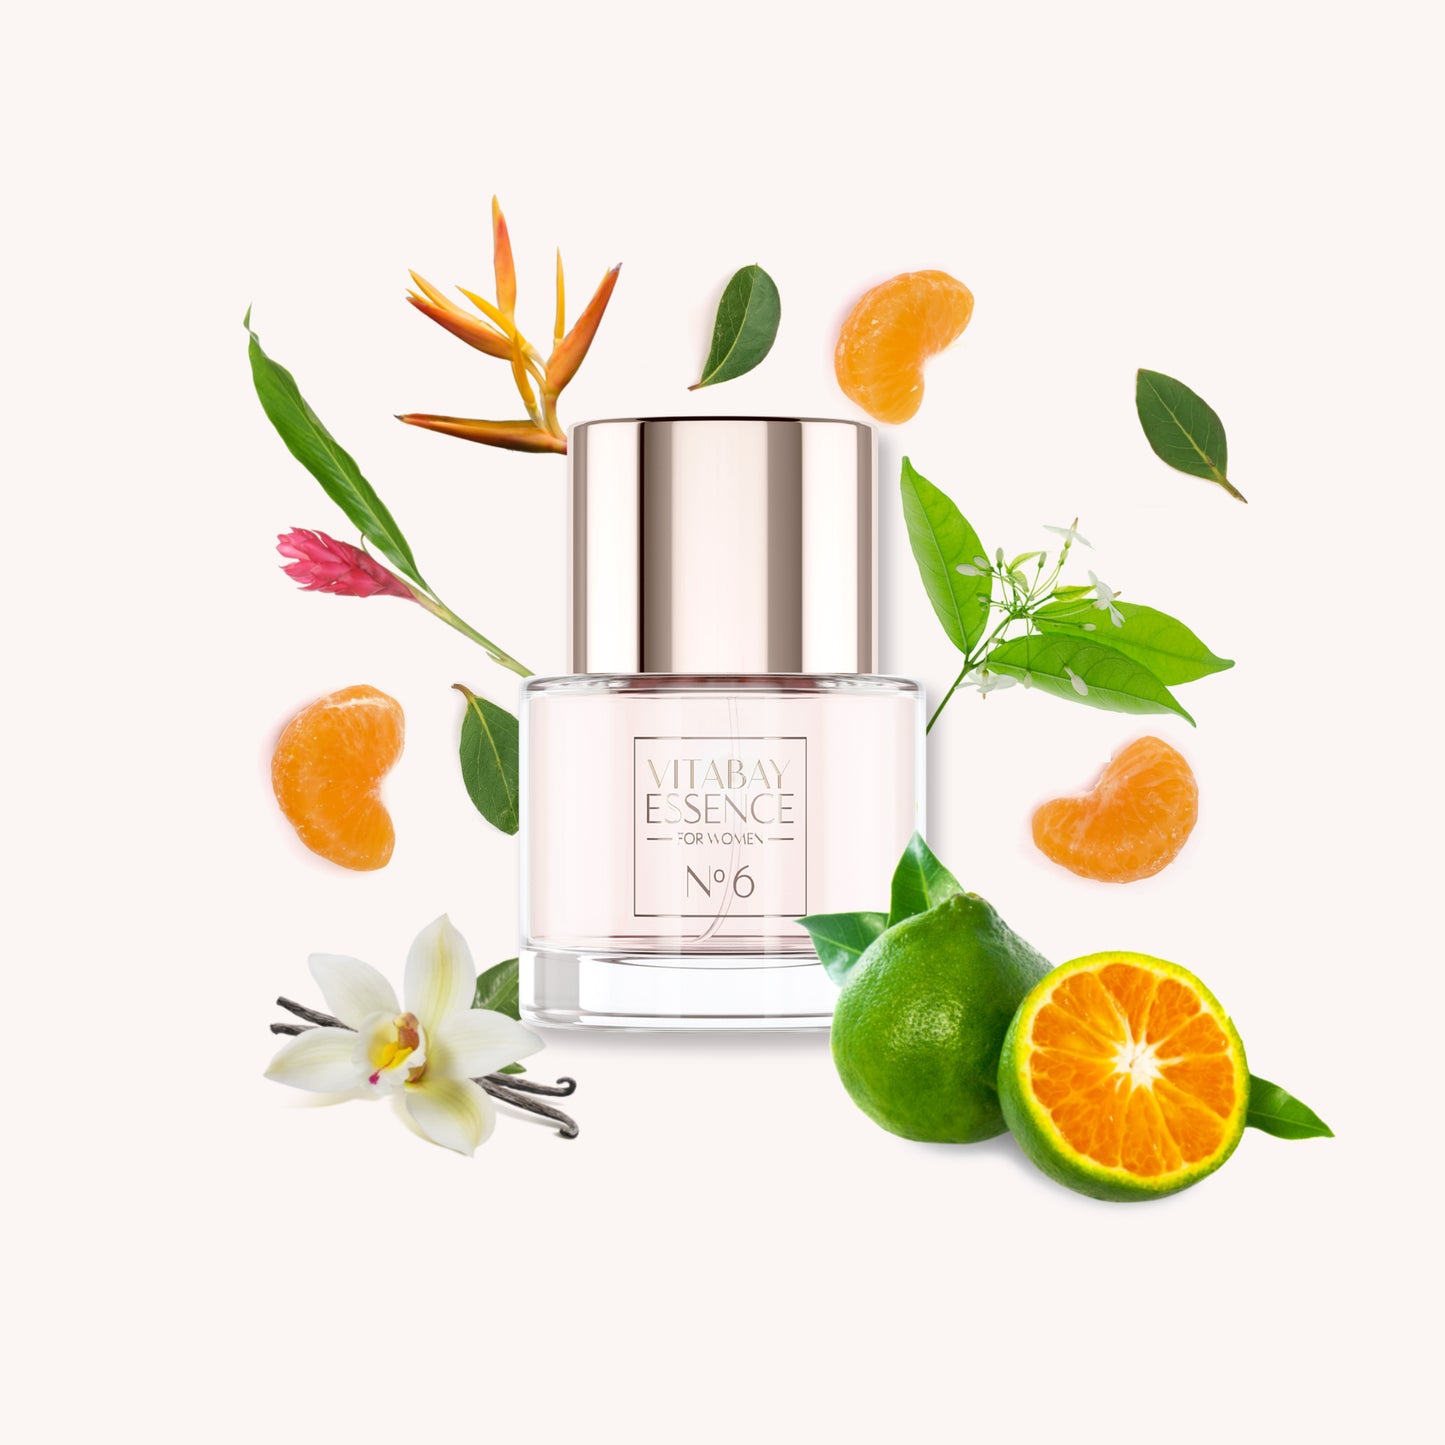 Vitabay Essence Fine Fragrance for Women No. 6 - 50 ml – Eau de Parfum 10% Parfümöl Vaporisateur / S